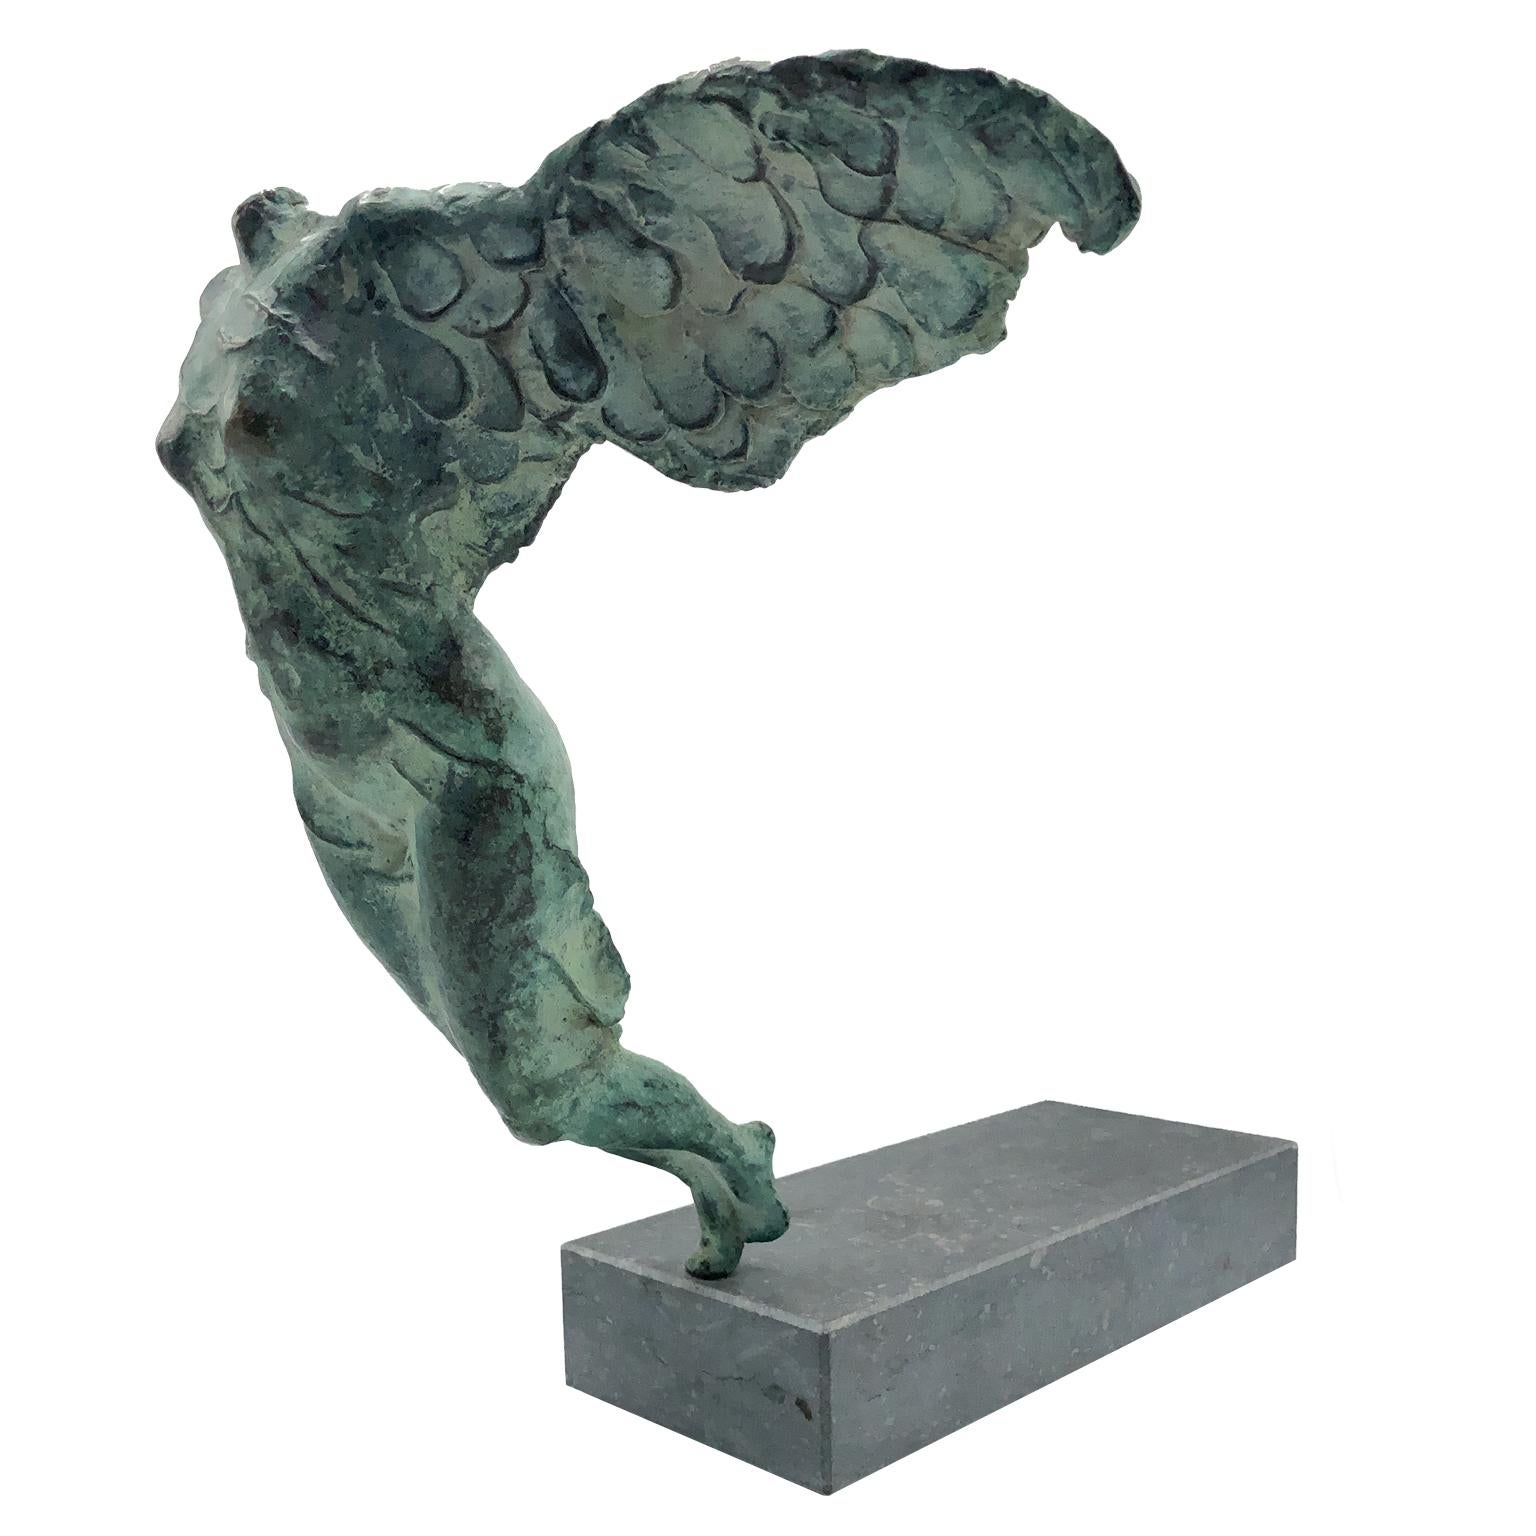 Godfried Dols Figurative Sculpture - Nude Female Figurative Bronze Contemporary Sculpture: Di Salto Alla Vita 